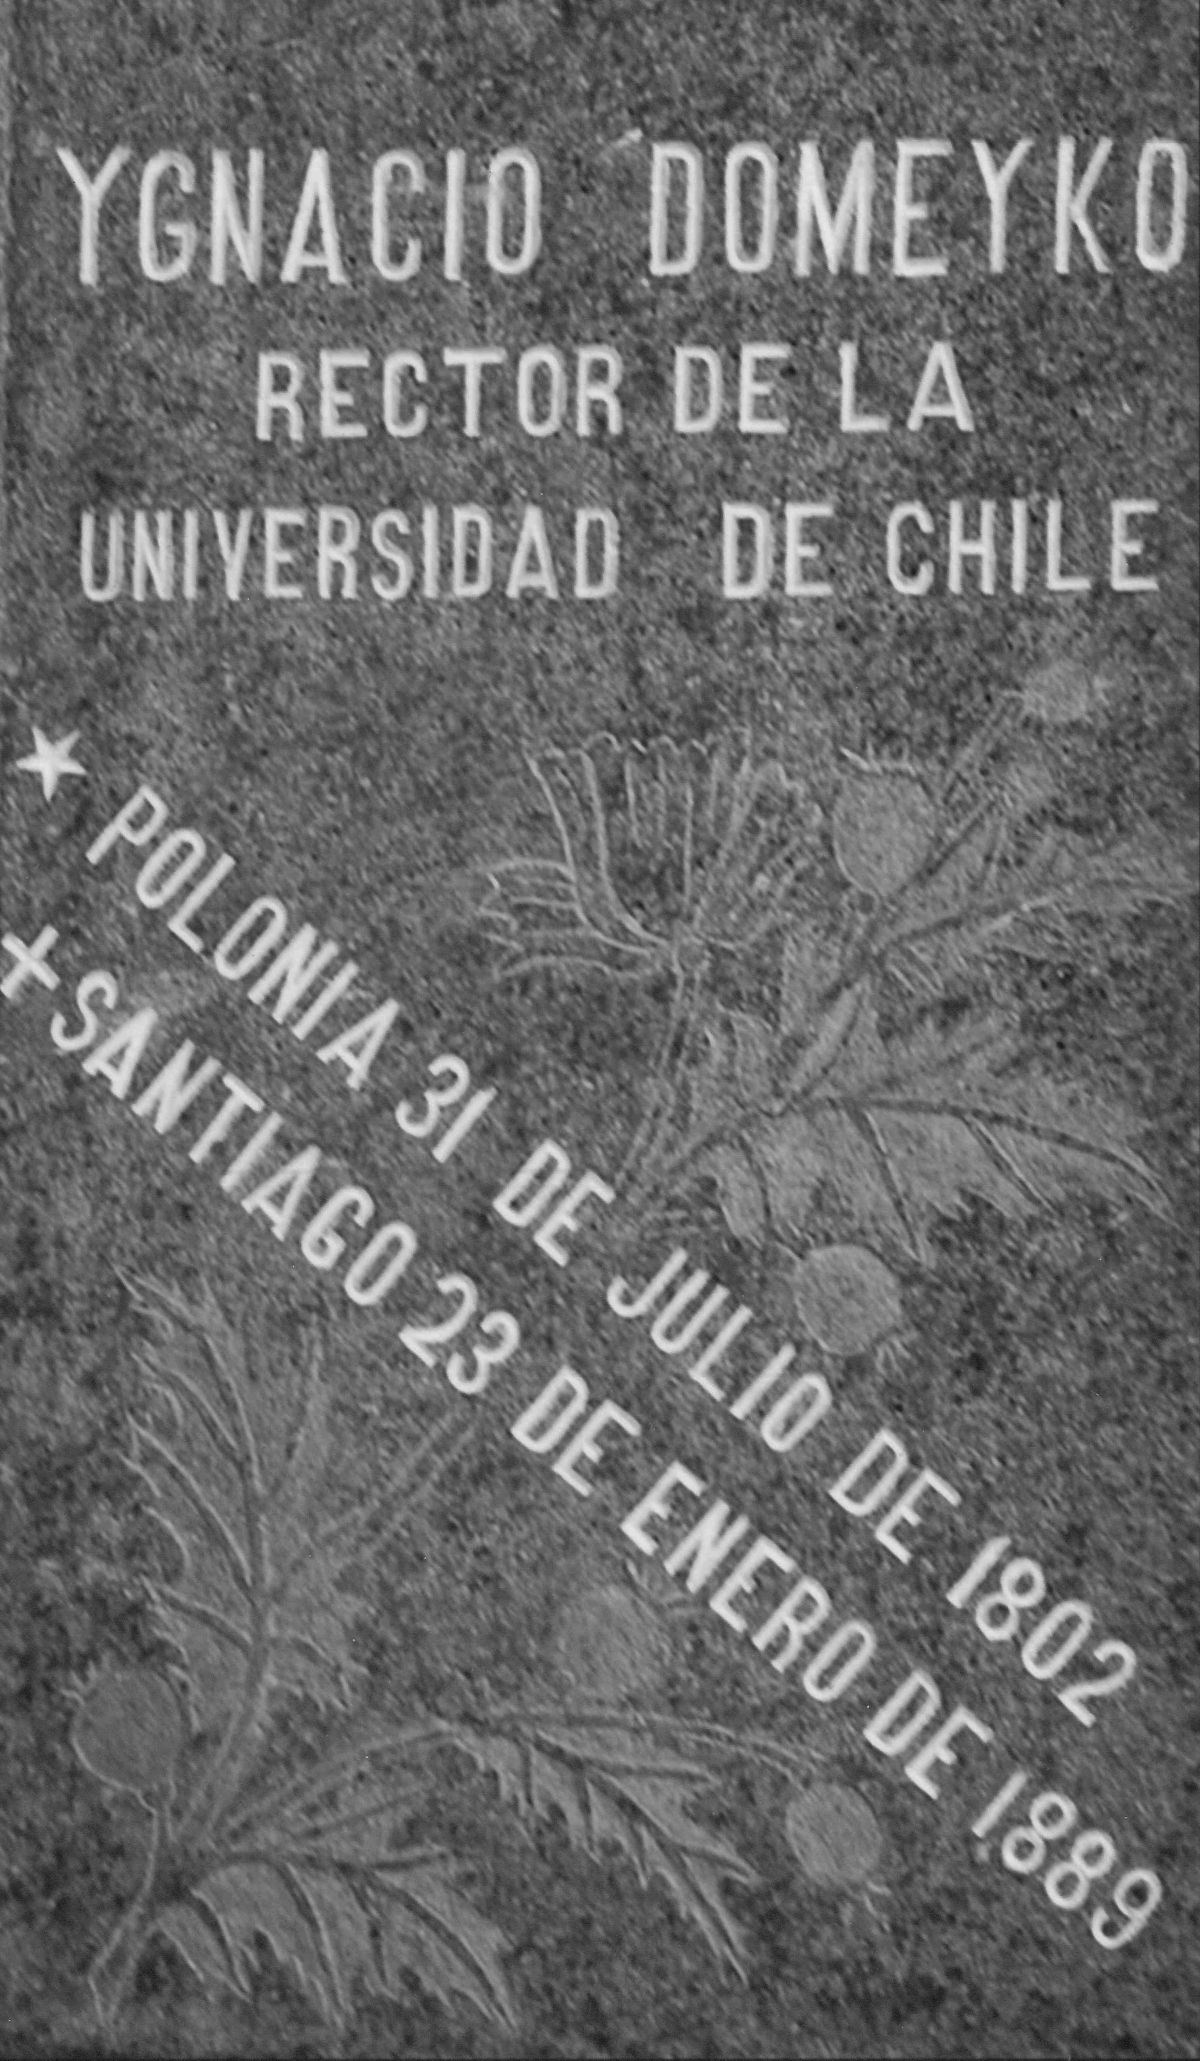 Ігнатій Домейко та його надгробок у Чилі, детальніше